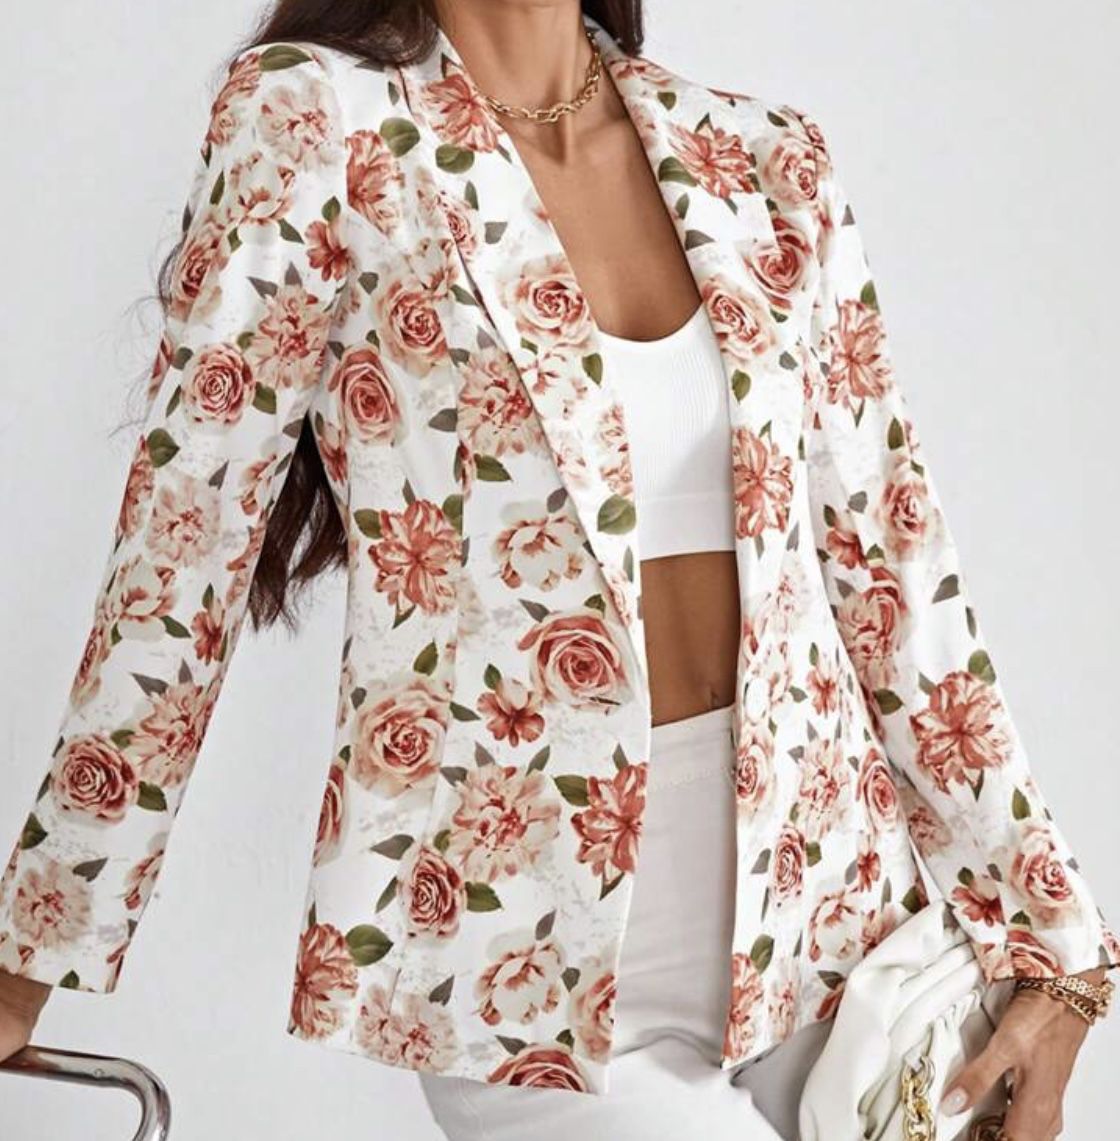 Floral Summer Jacket Vero Moda